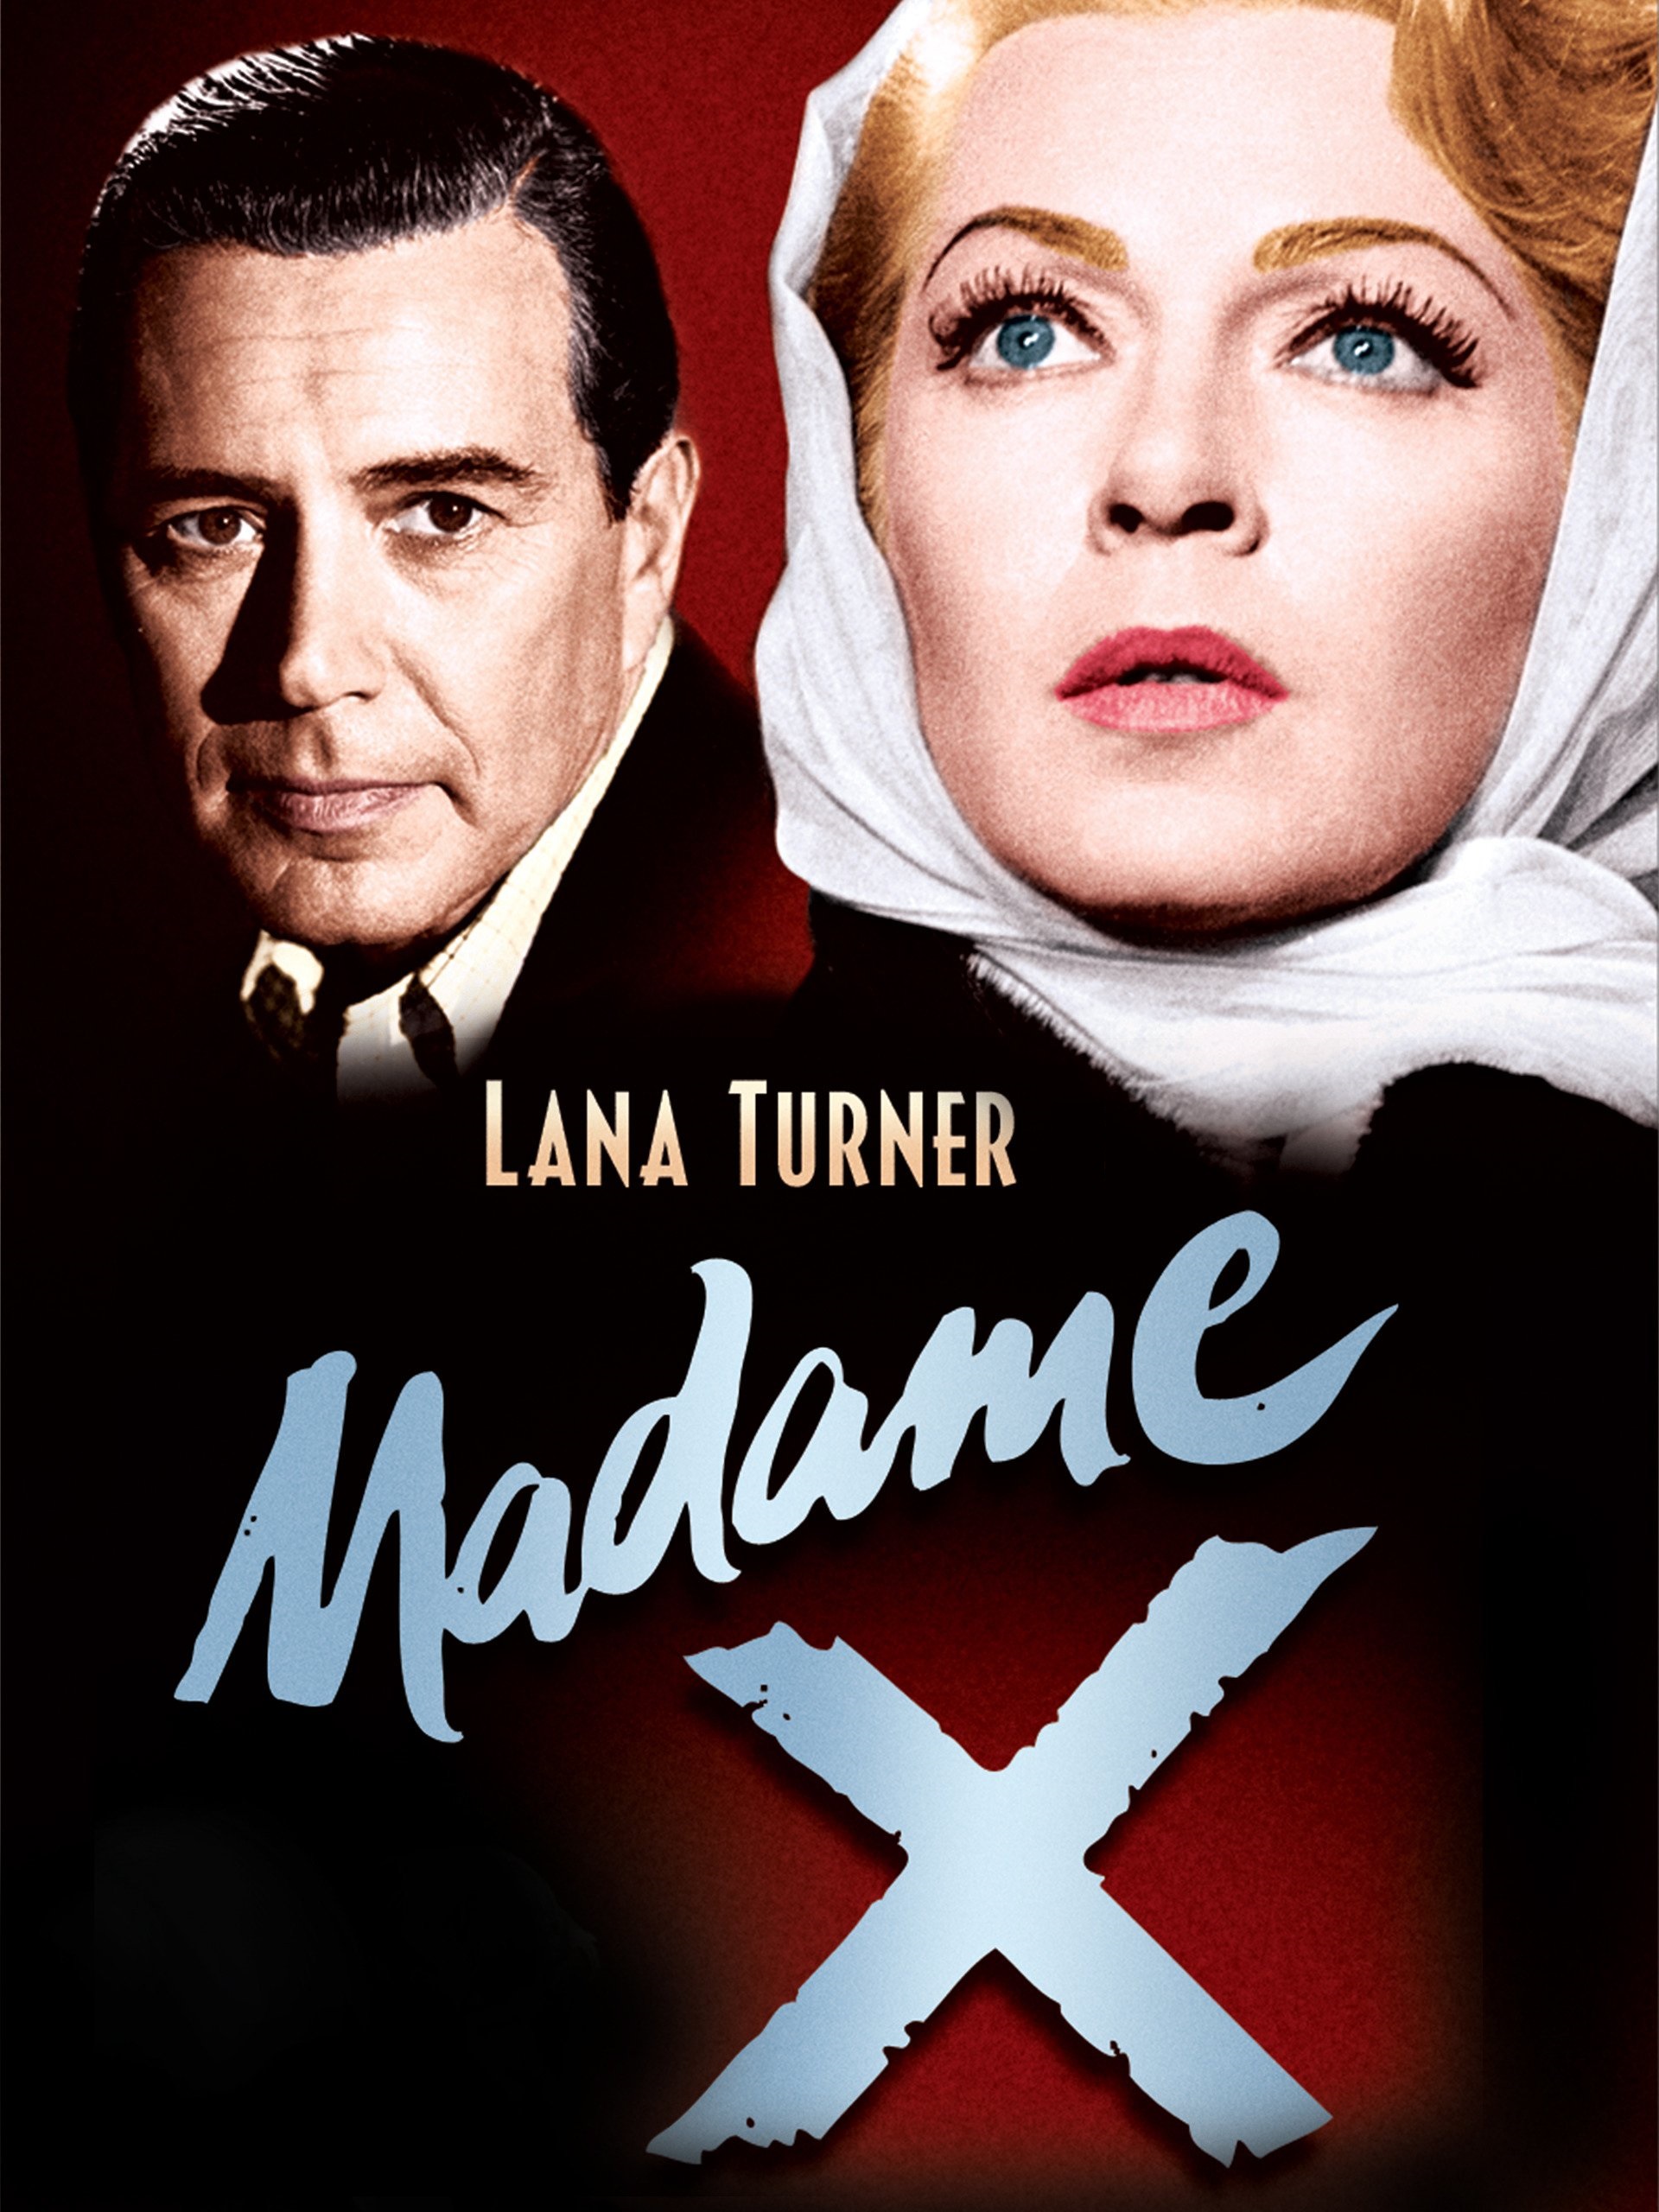 Madame X [HD] (1966)